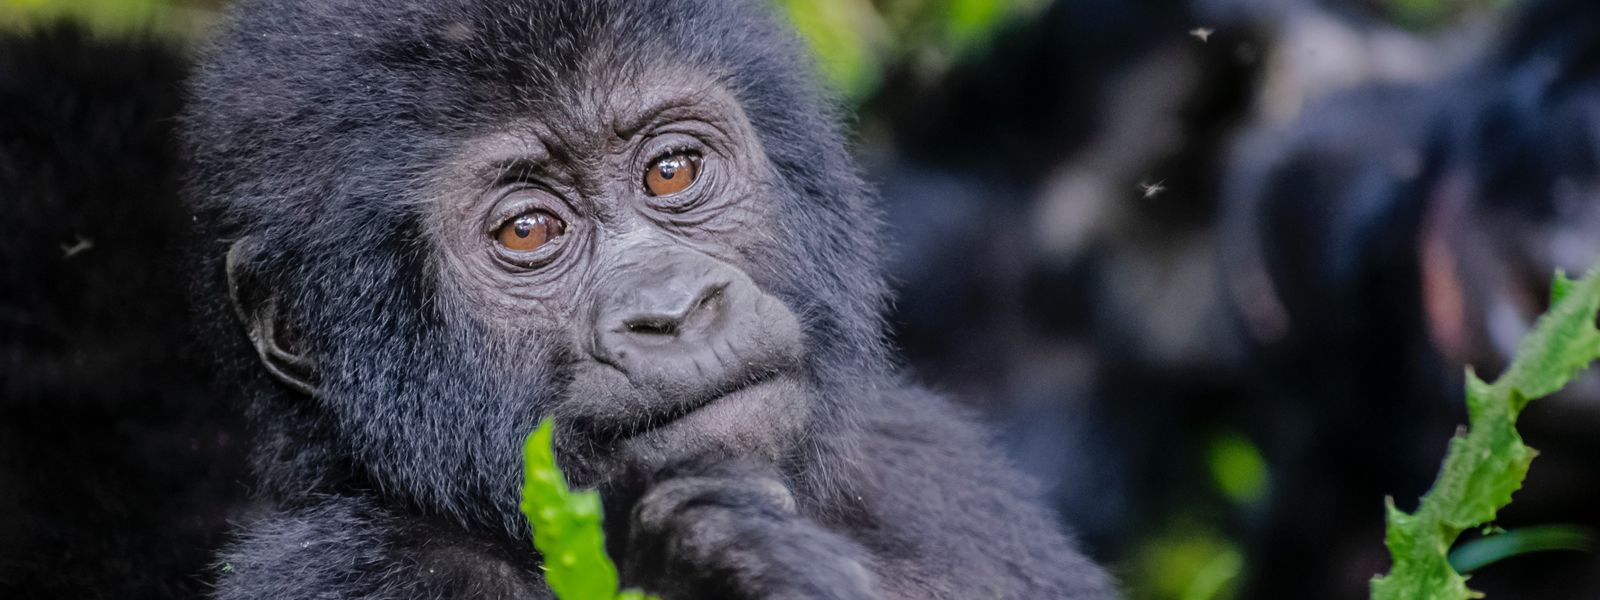 Best of Uganda Ideal Primate tour-10 Days